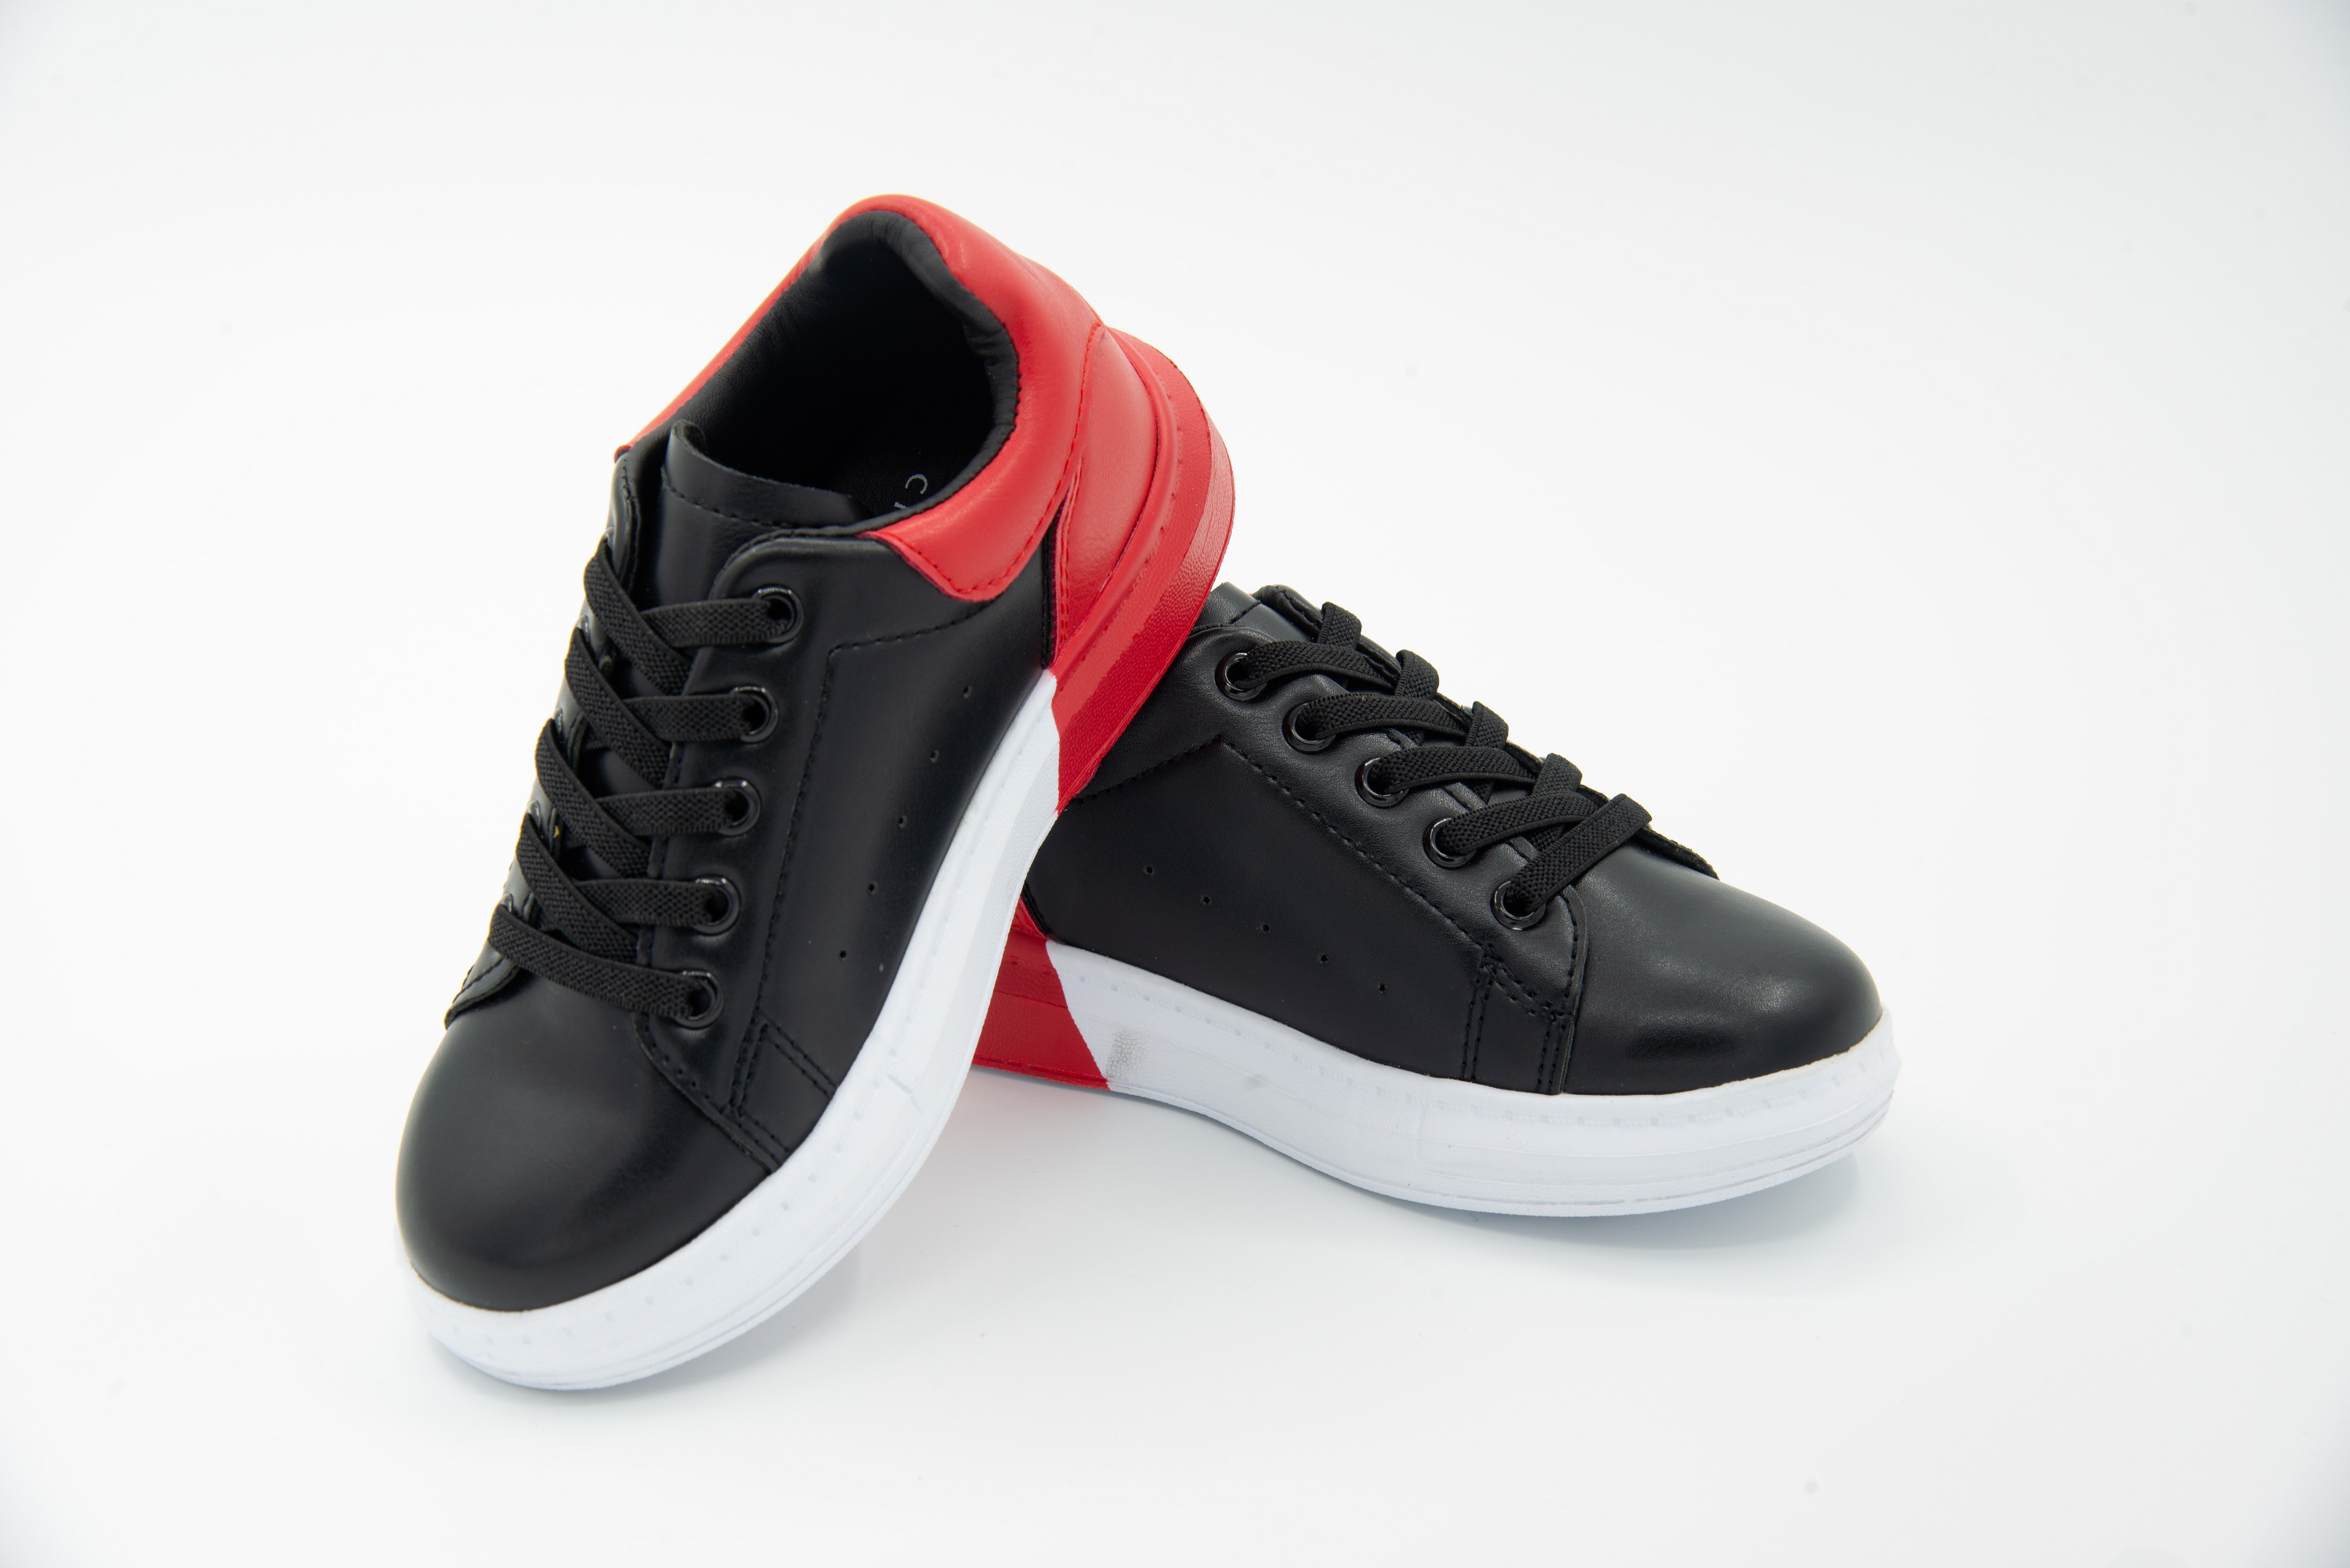 Giày Thể Thao Sneaker Bé Trai Bé Gái Đi Học Cổ Thấp Crown Space UK Active CRUK254 Cho Trẻ em Chất Liệu Cao Cấp  Siêu Nhẹ Êm Size 28-36/4-14 Tuổi